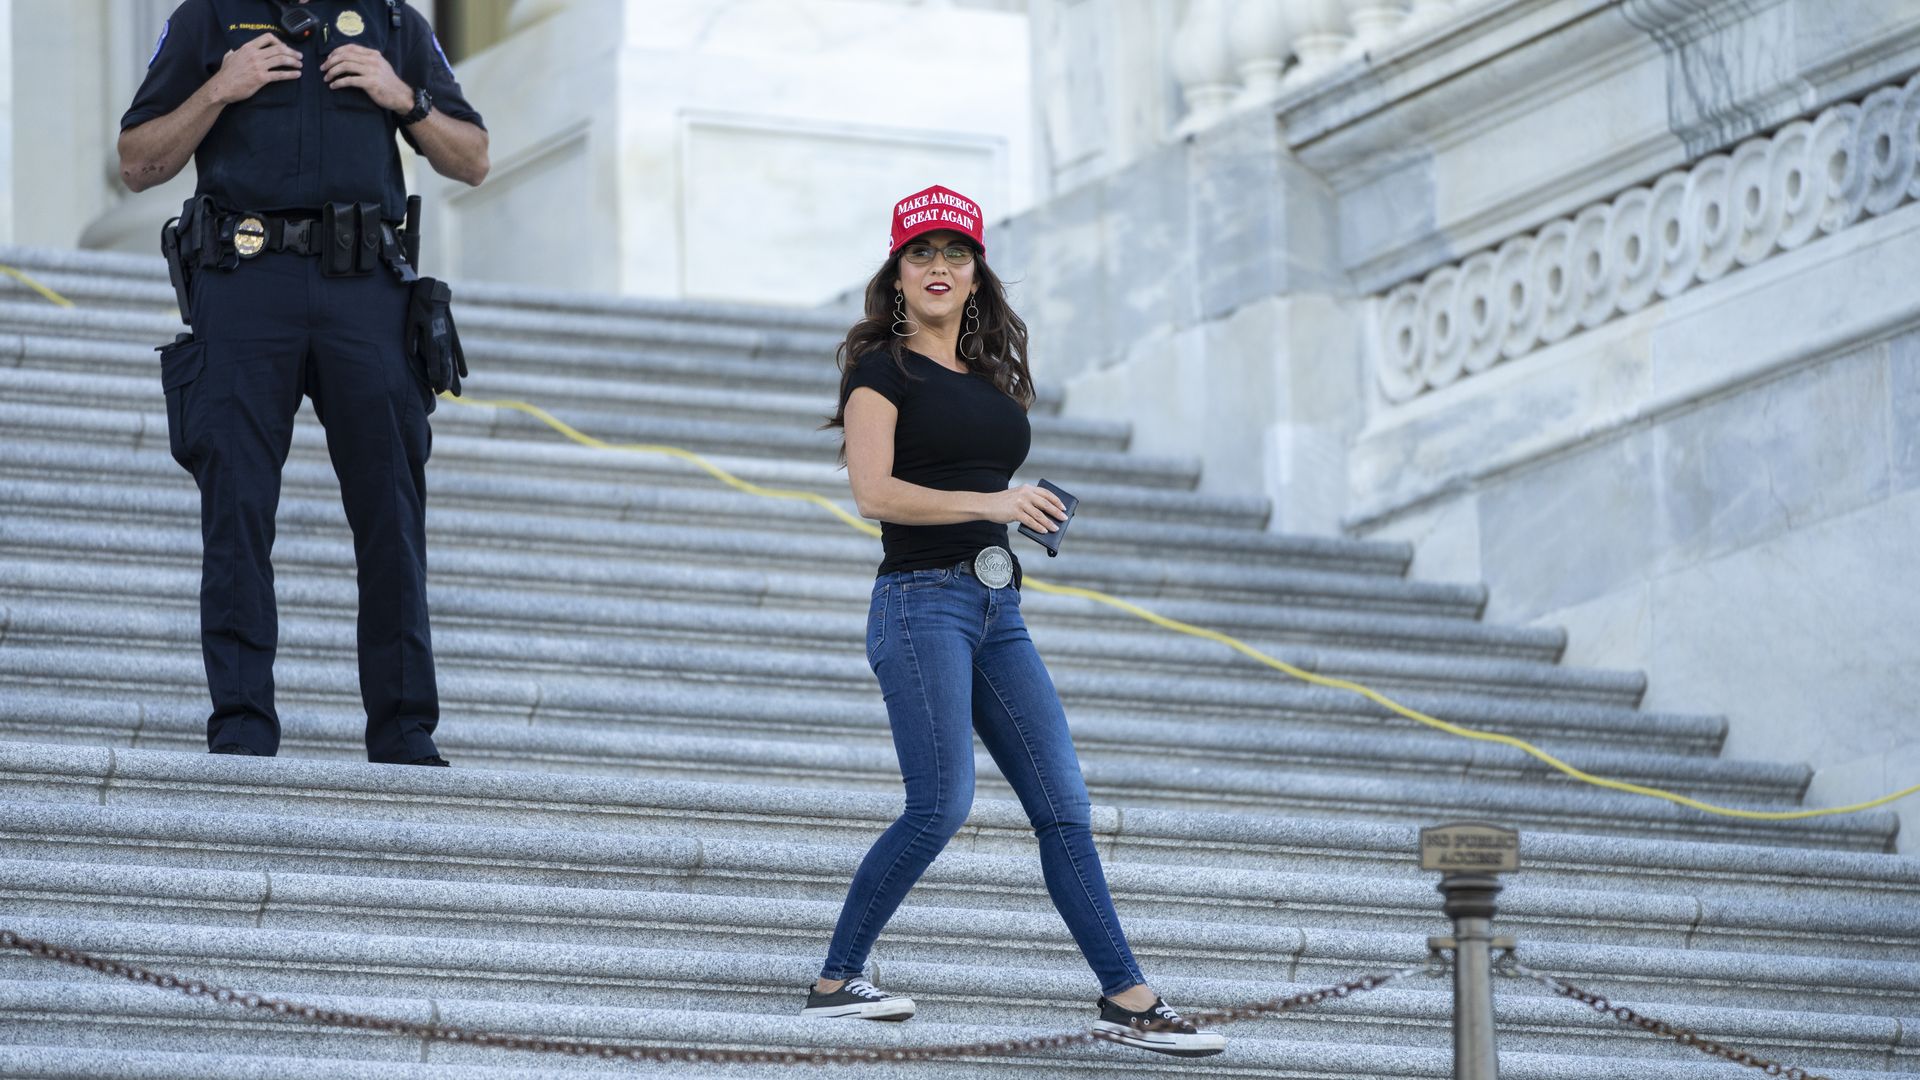 Rep. Lauren Boebert is seen leaving the Capitol on Thursday.